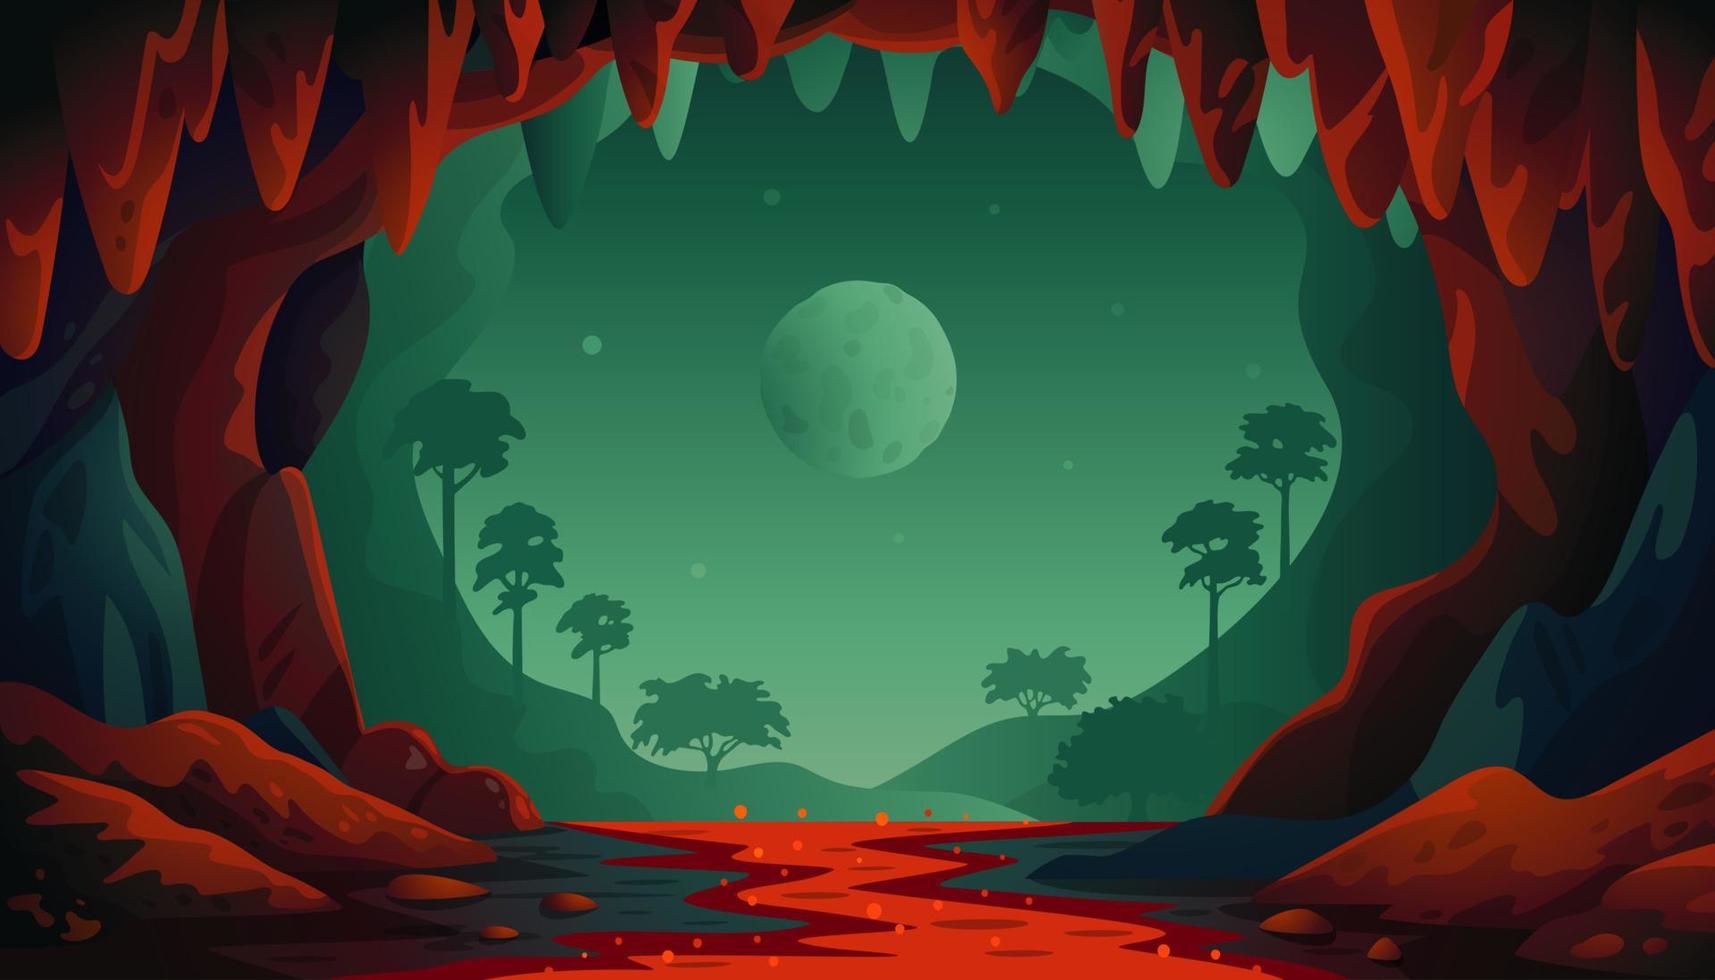 paisaje vectorial de la selva. paisaje de cuevas con un río rojo subterráneo y un bosque. ilustración vectorial en estilo de dibujos animados plana vector